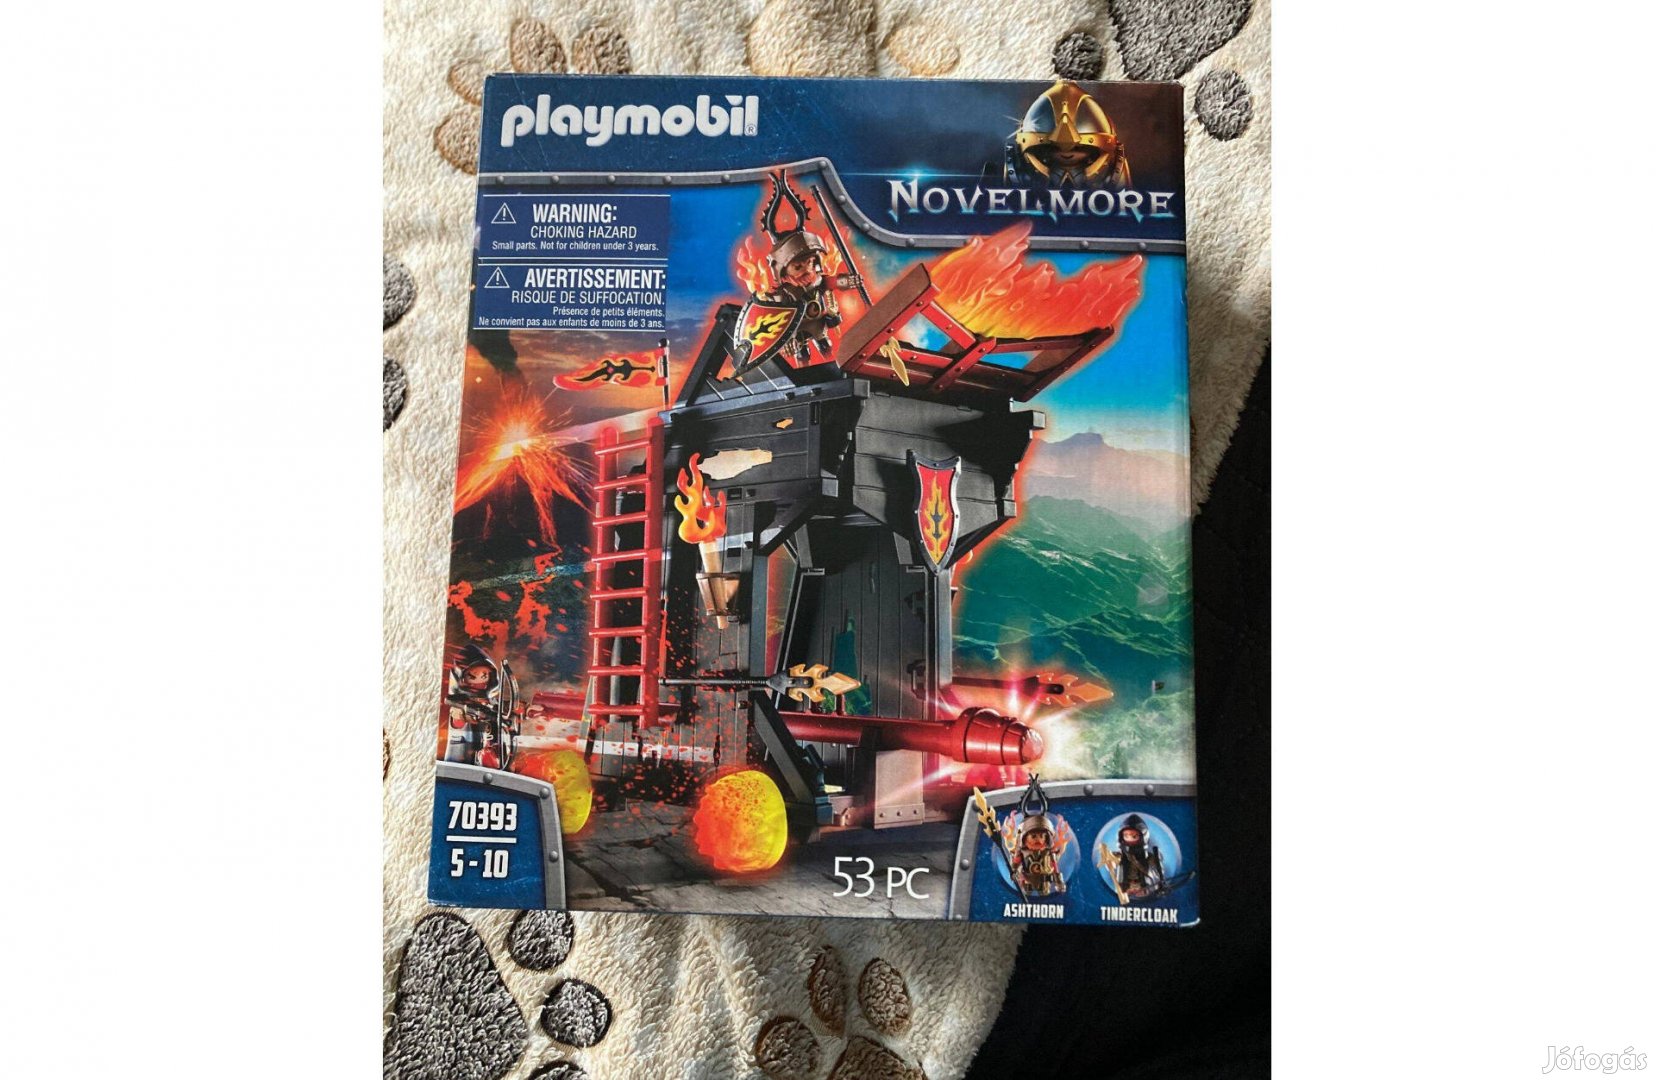 Playmobil - Burnham tüzes faltörő kosa - 9200 Ft